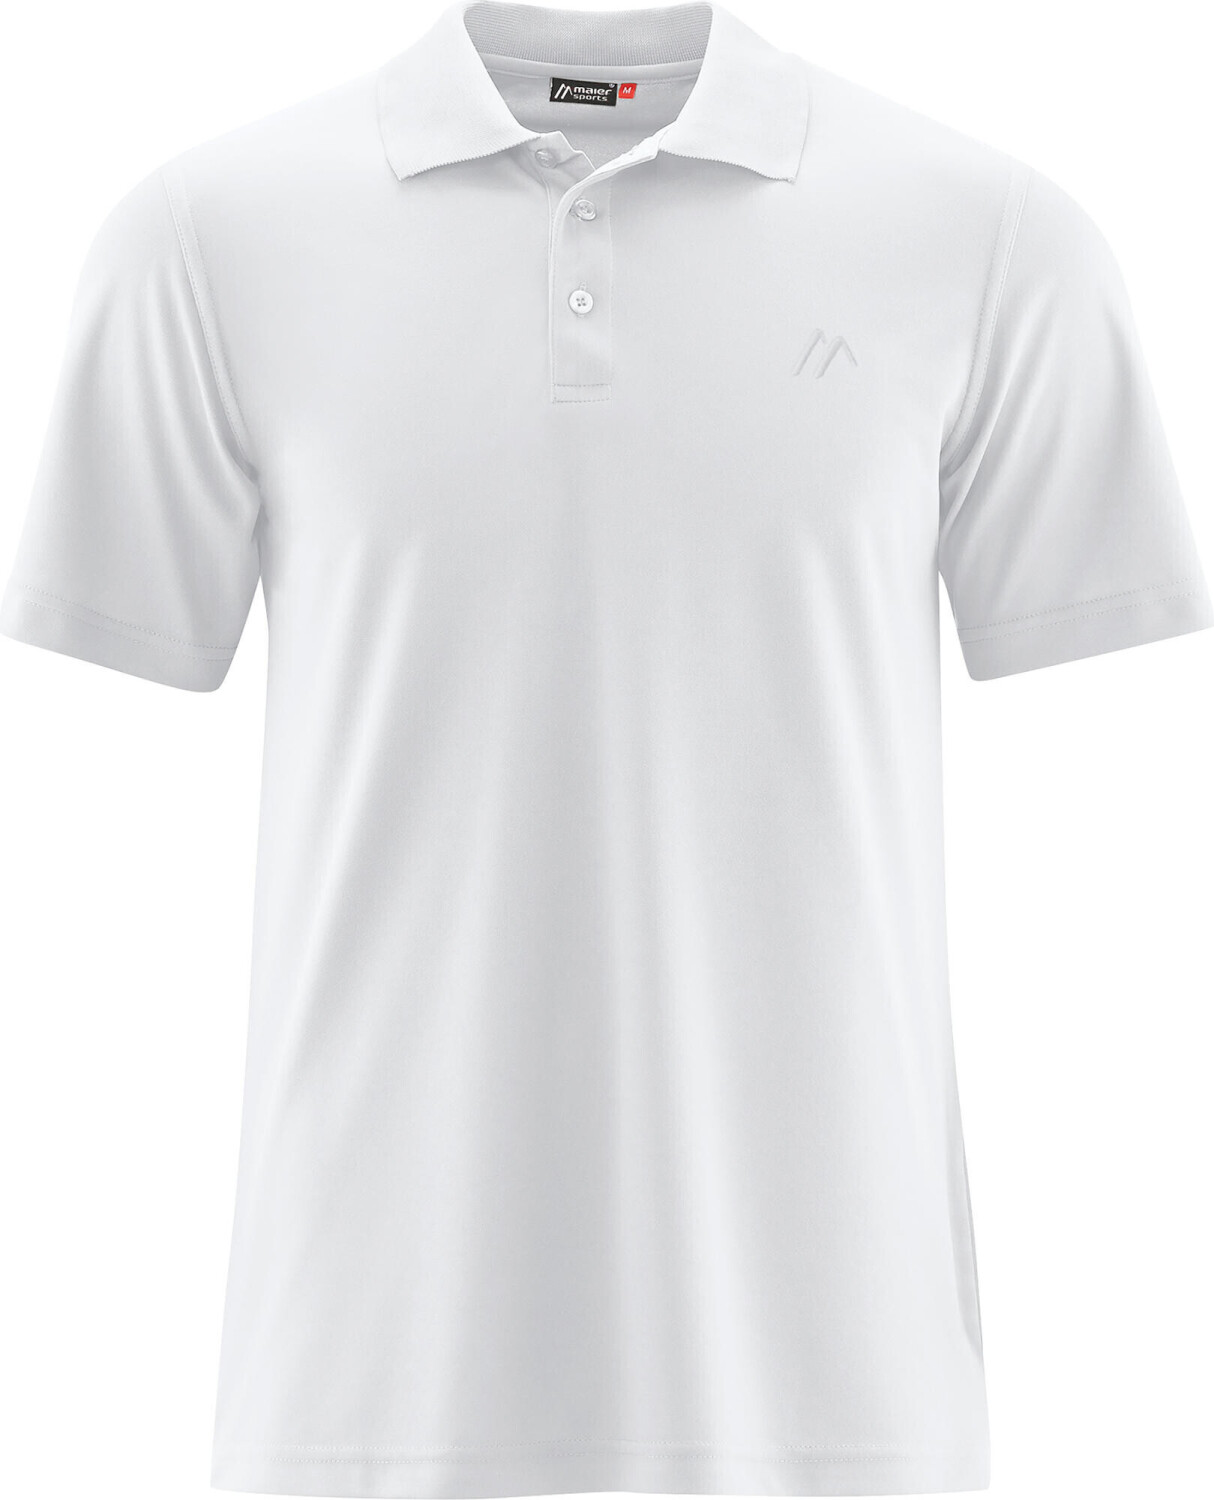 Maier Sports Ulrich Polo Shirt Men (152303) white ab 30,90 € |  Preisvergleich bei